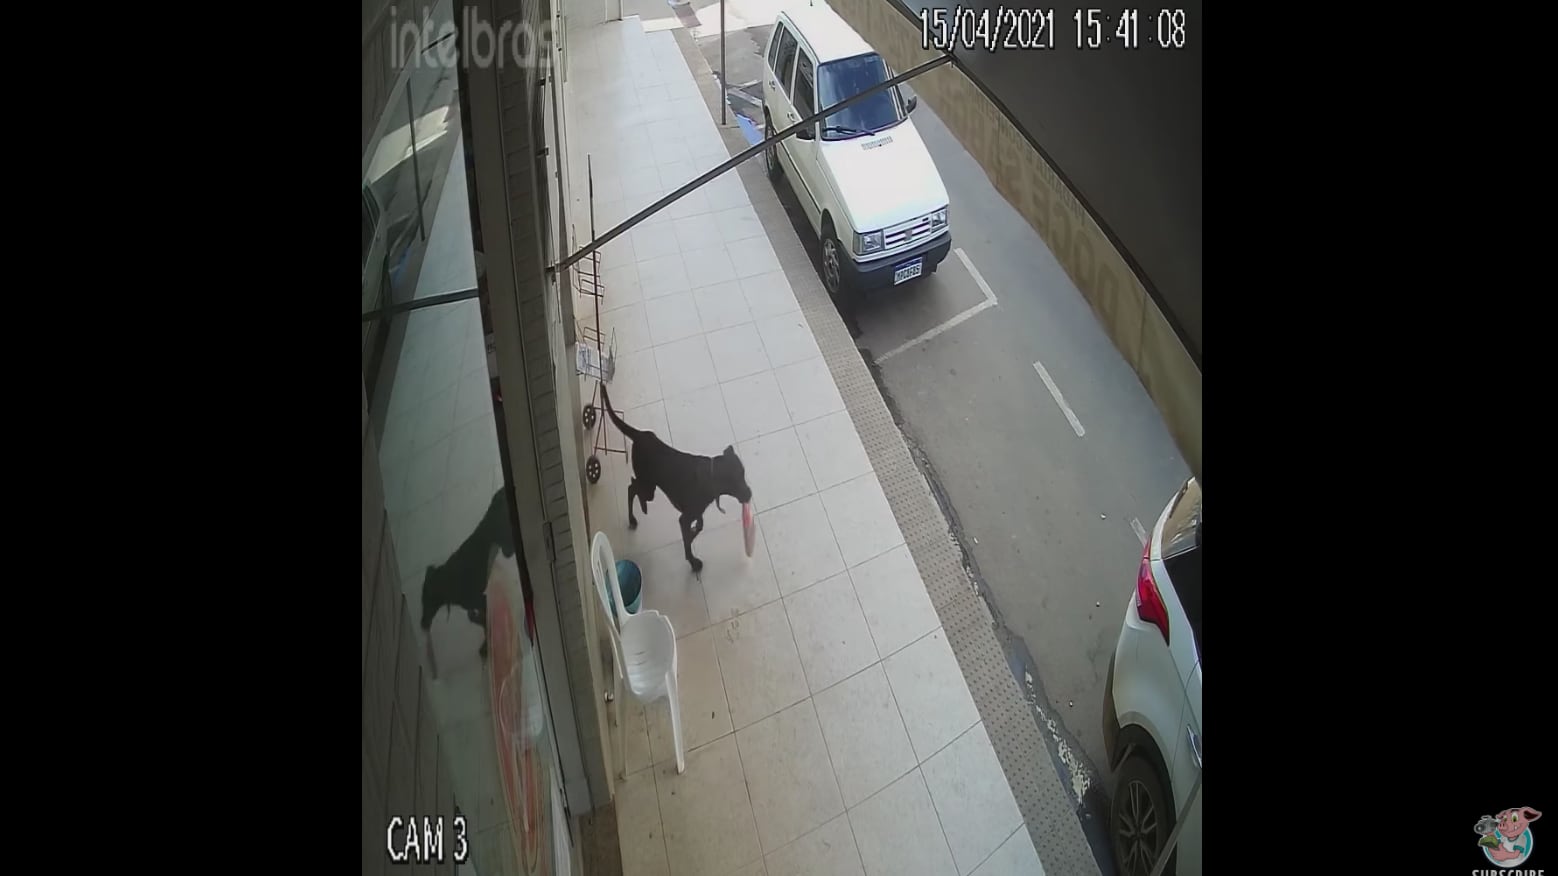 Vídeo registra momento em que cachorro de rua entra em padaria e ‘rouba’ saco de pão